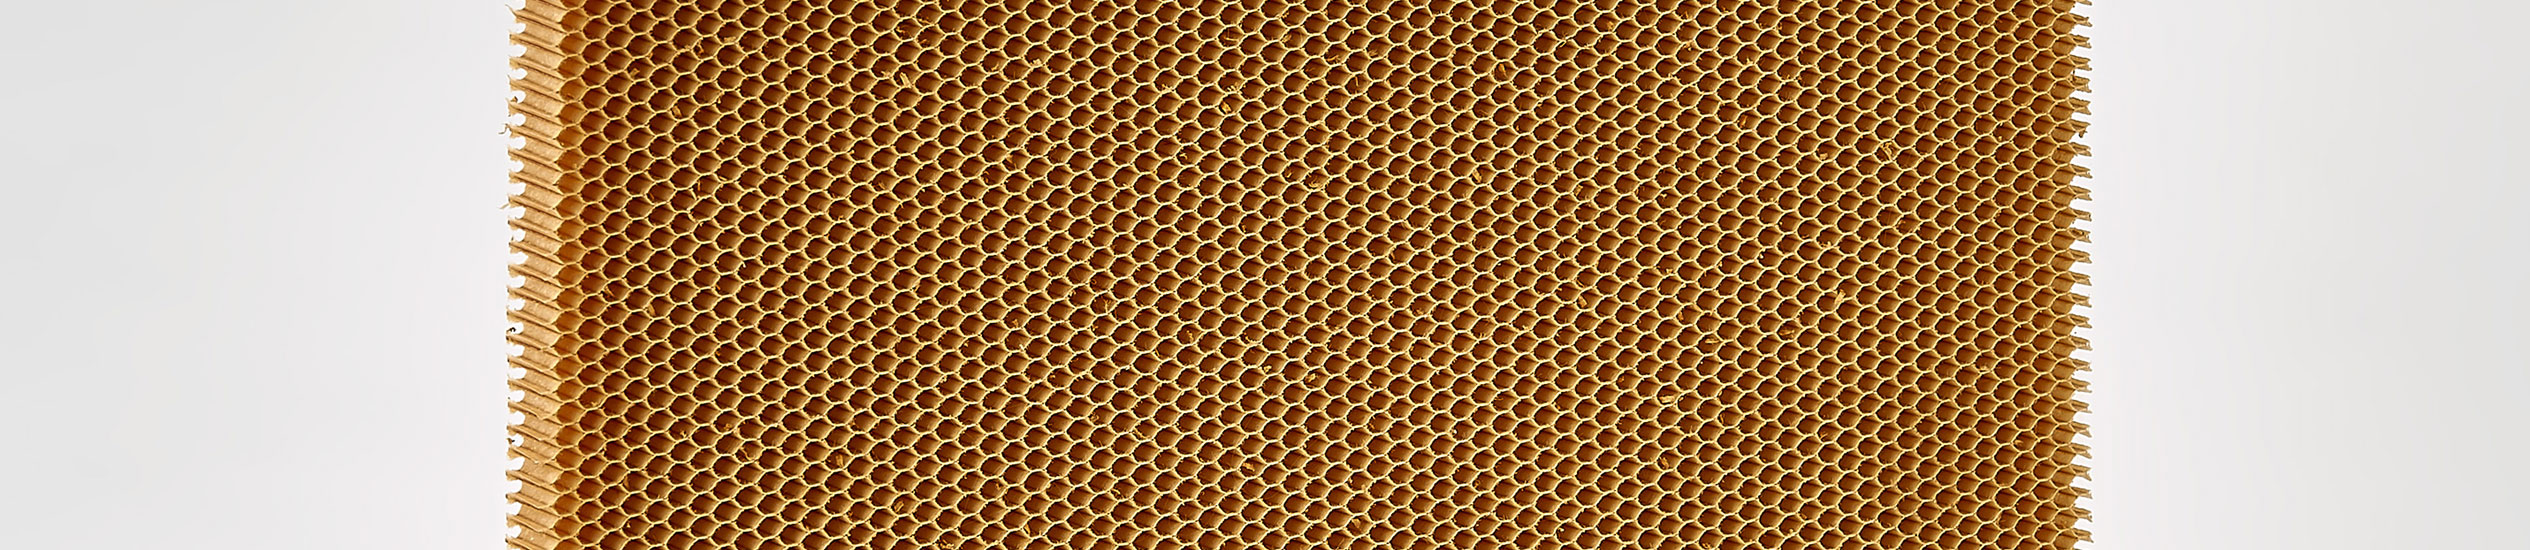 Le nid d’abeille en Nomex® est un produit non métallique, très léger et résistant. Il est réalisé avec un papier aramidique imprégné d’une résine phénolique